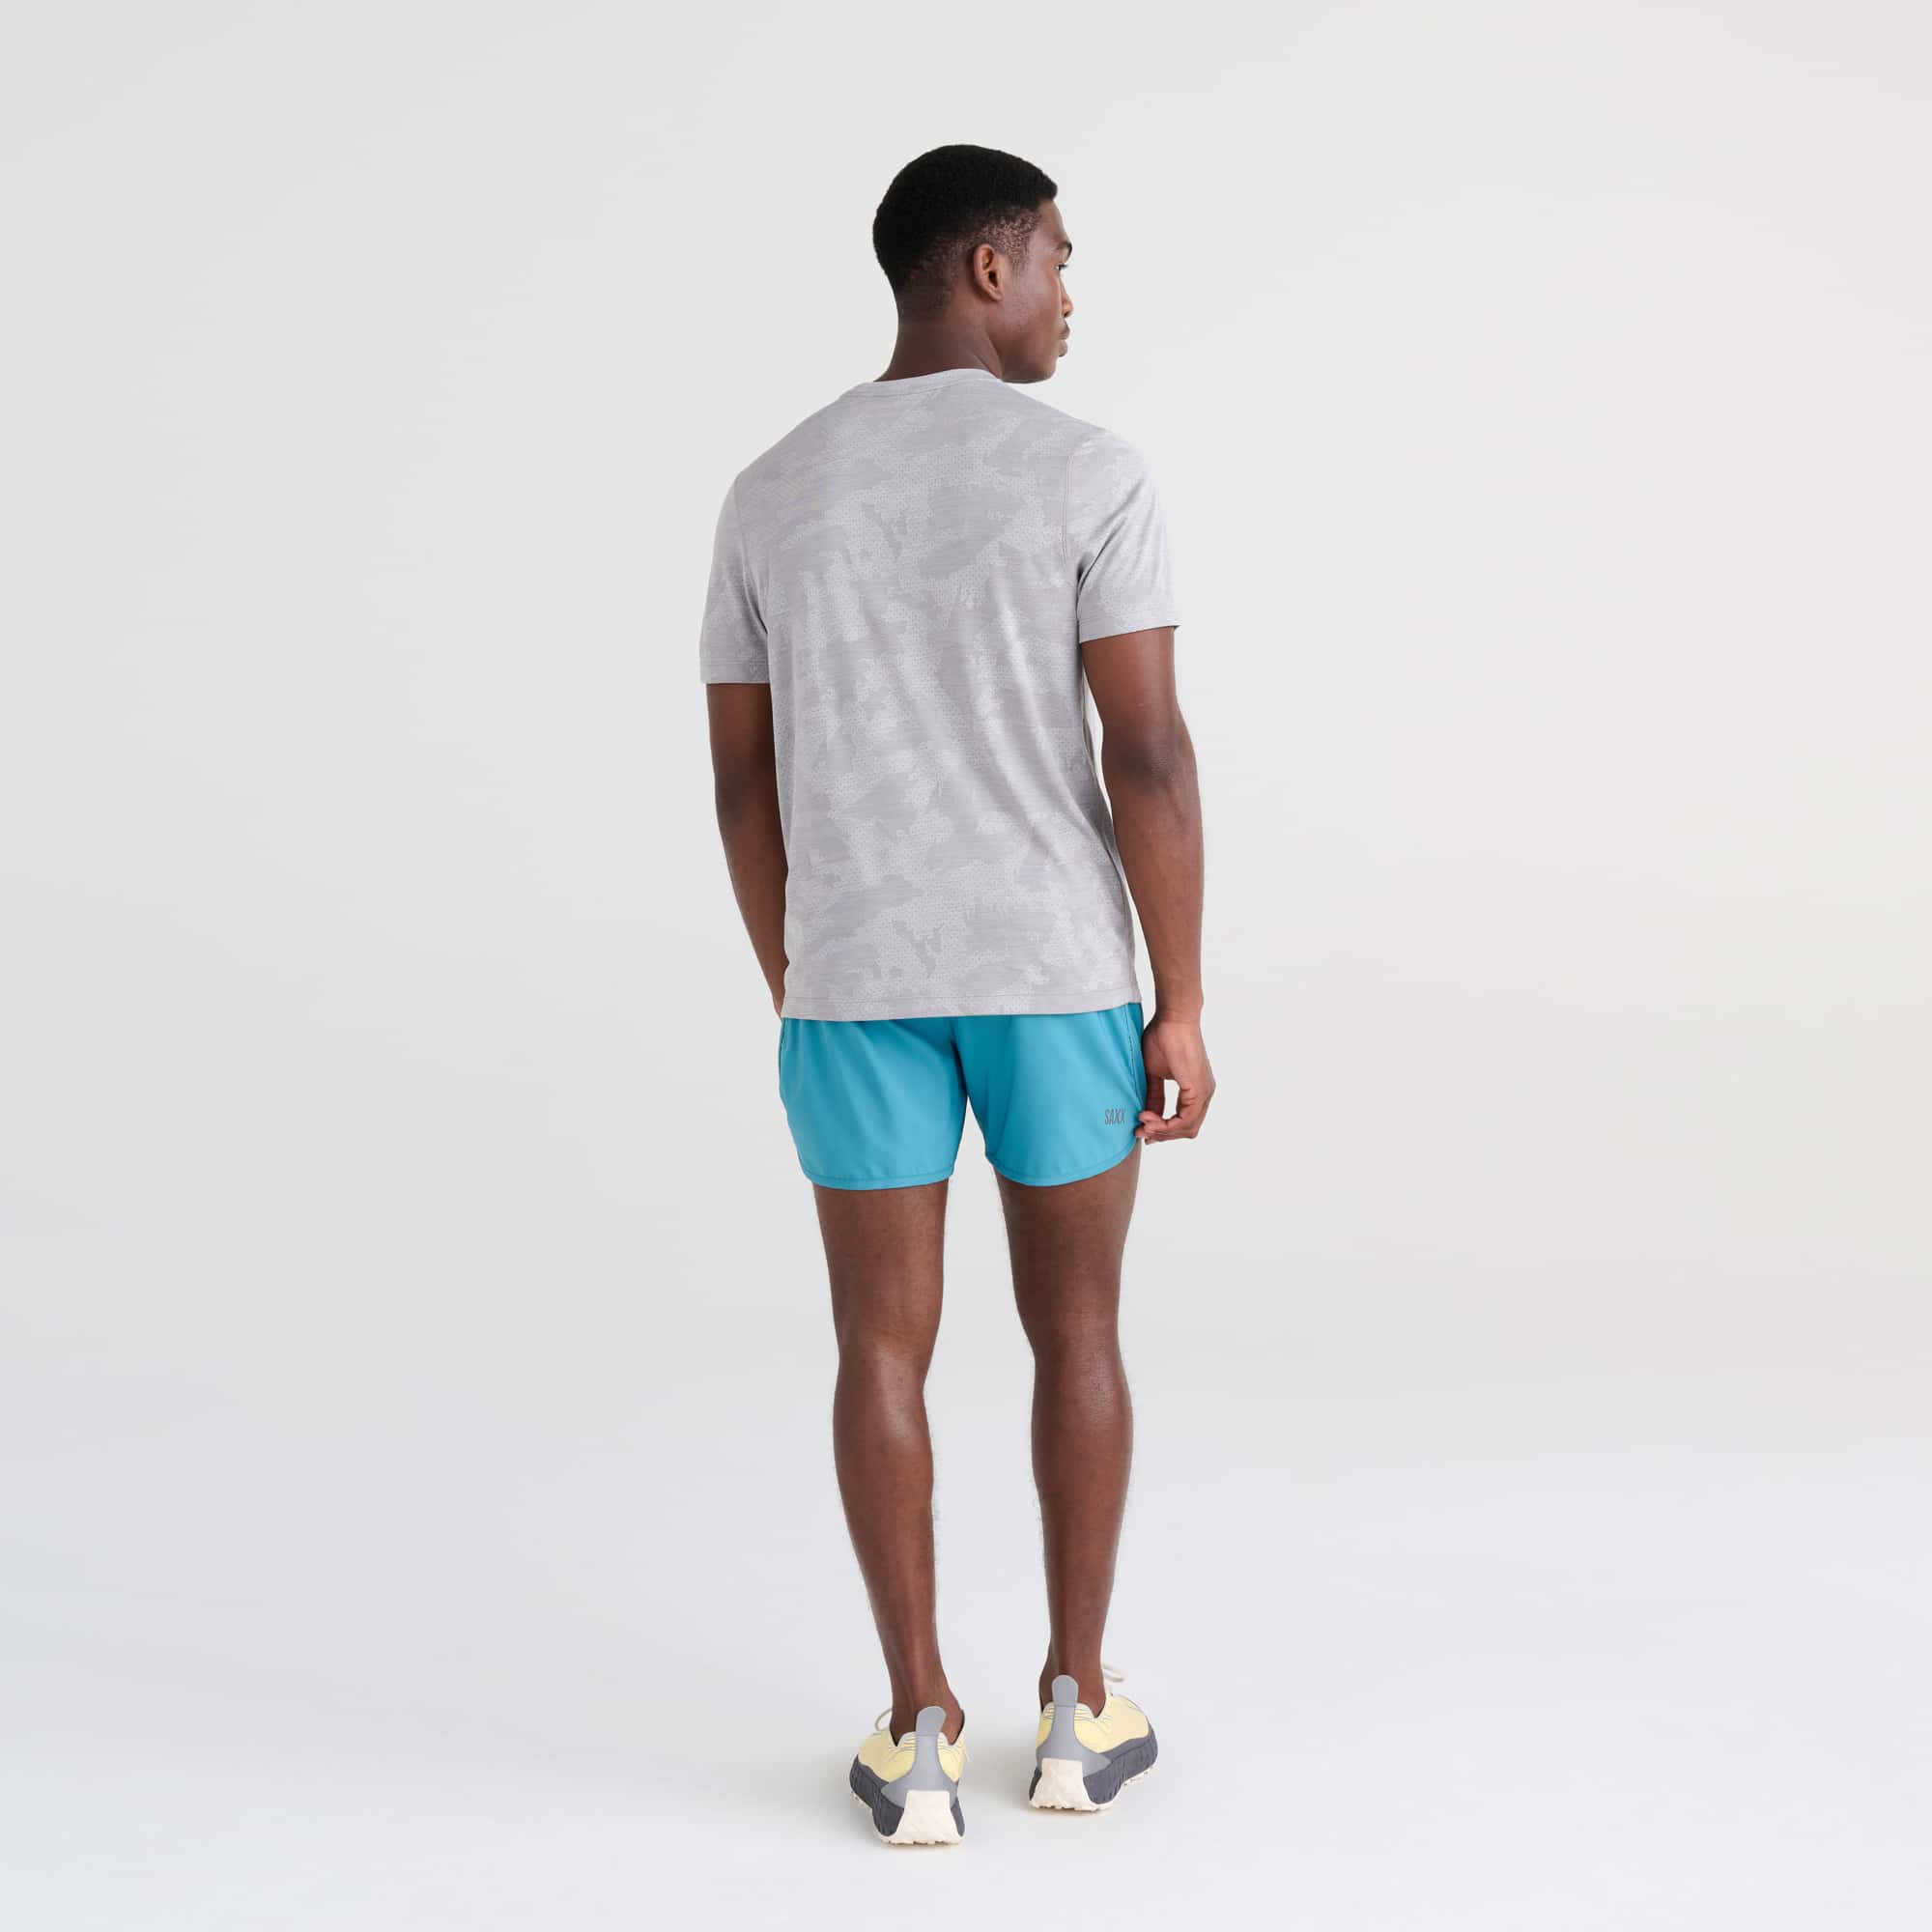 Hightail 2N1 Running Short - Men's Sportswear – SAXX Underwear Canada